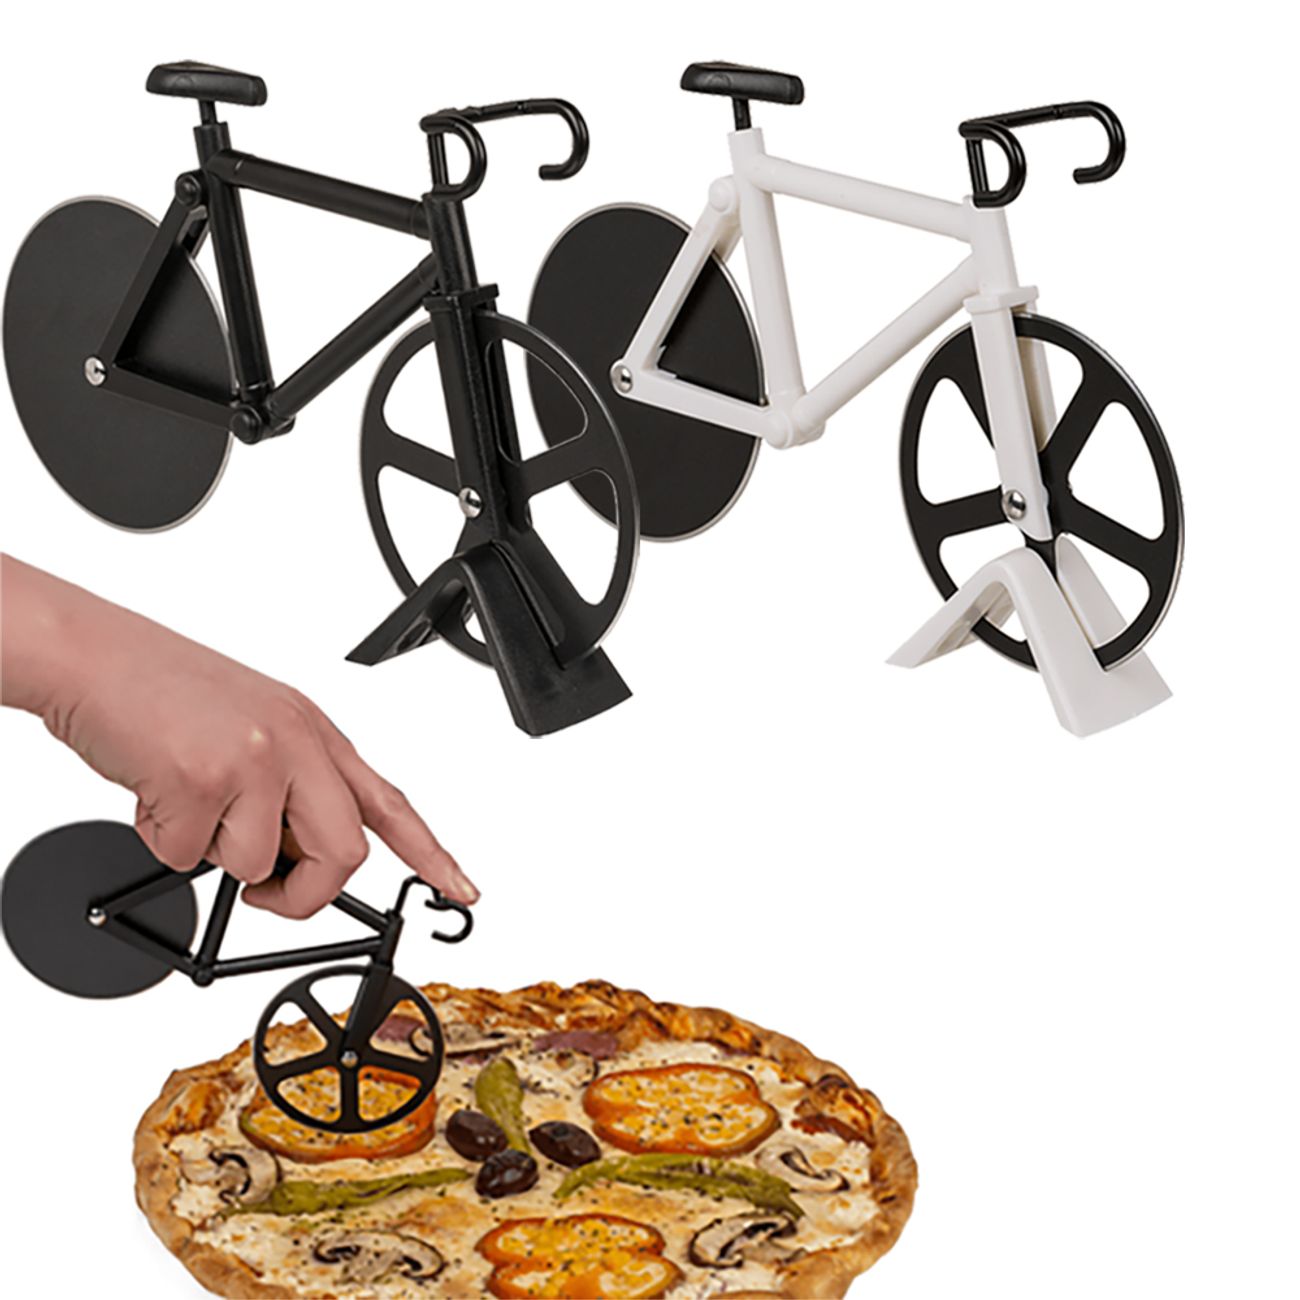 pizzaskarare-cykel-85247-1